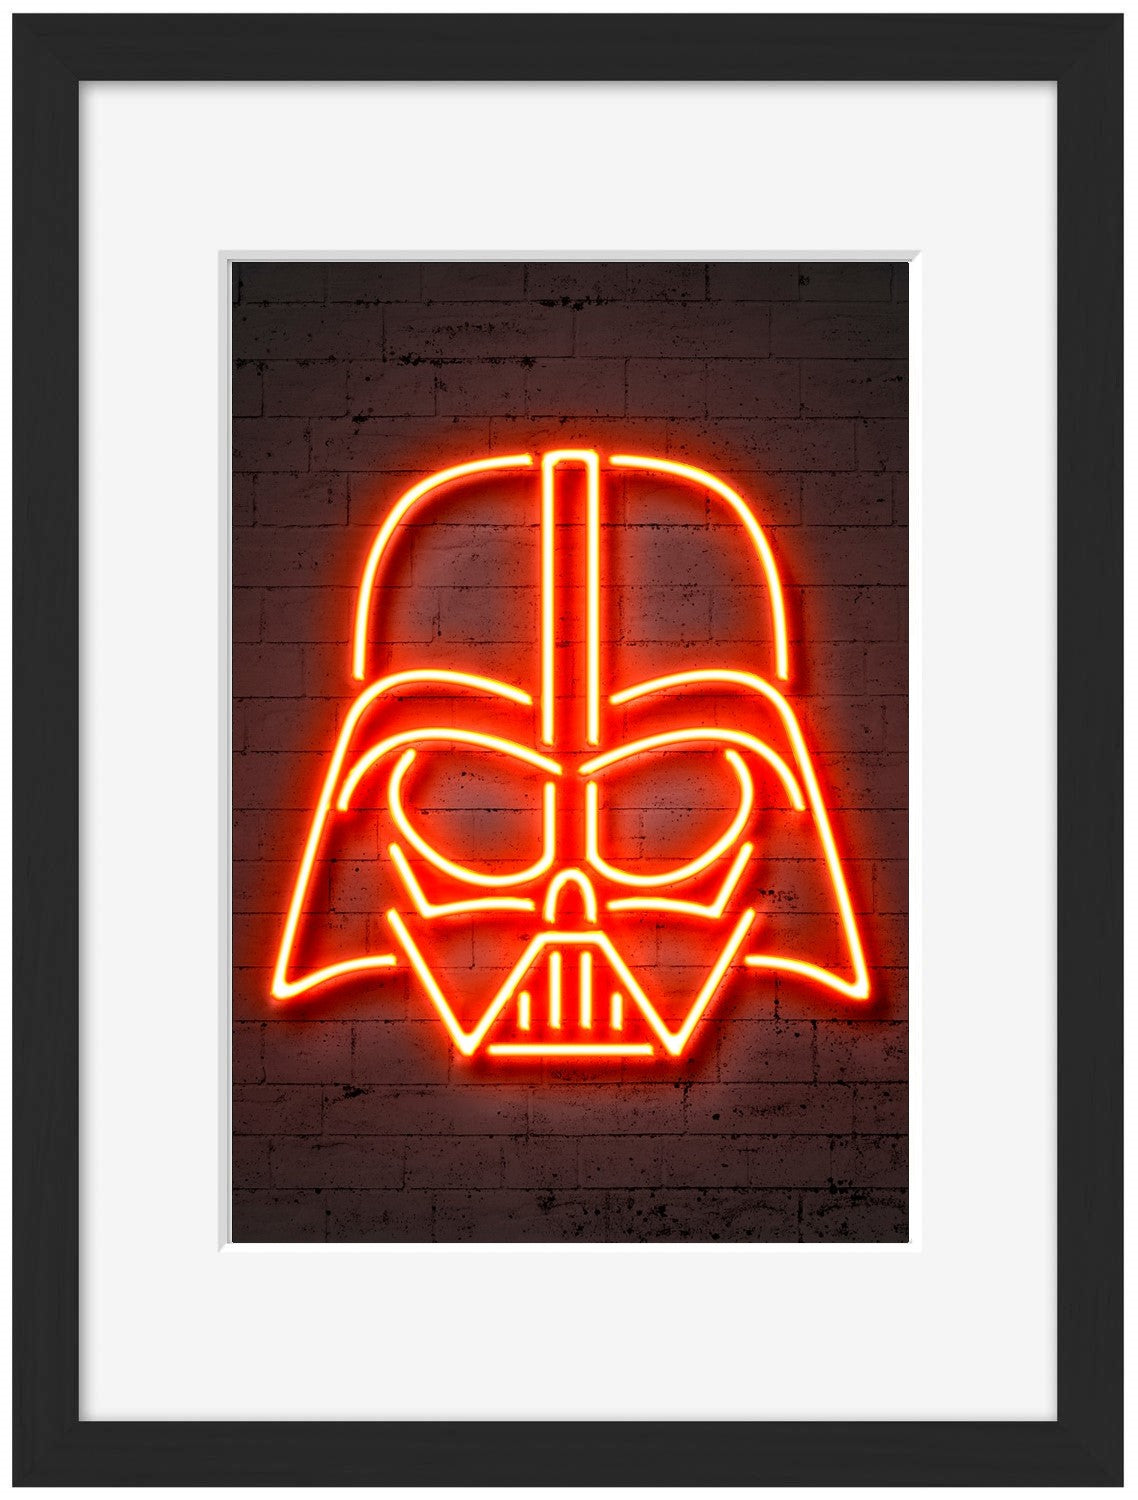 Vader-neon-art, print-Framed Print-30 x 40 cm-BLUE SHAKER